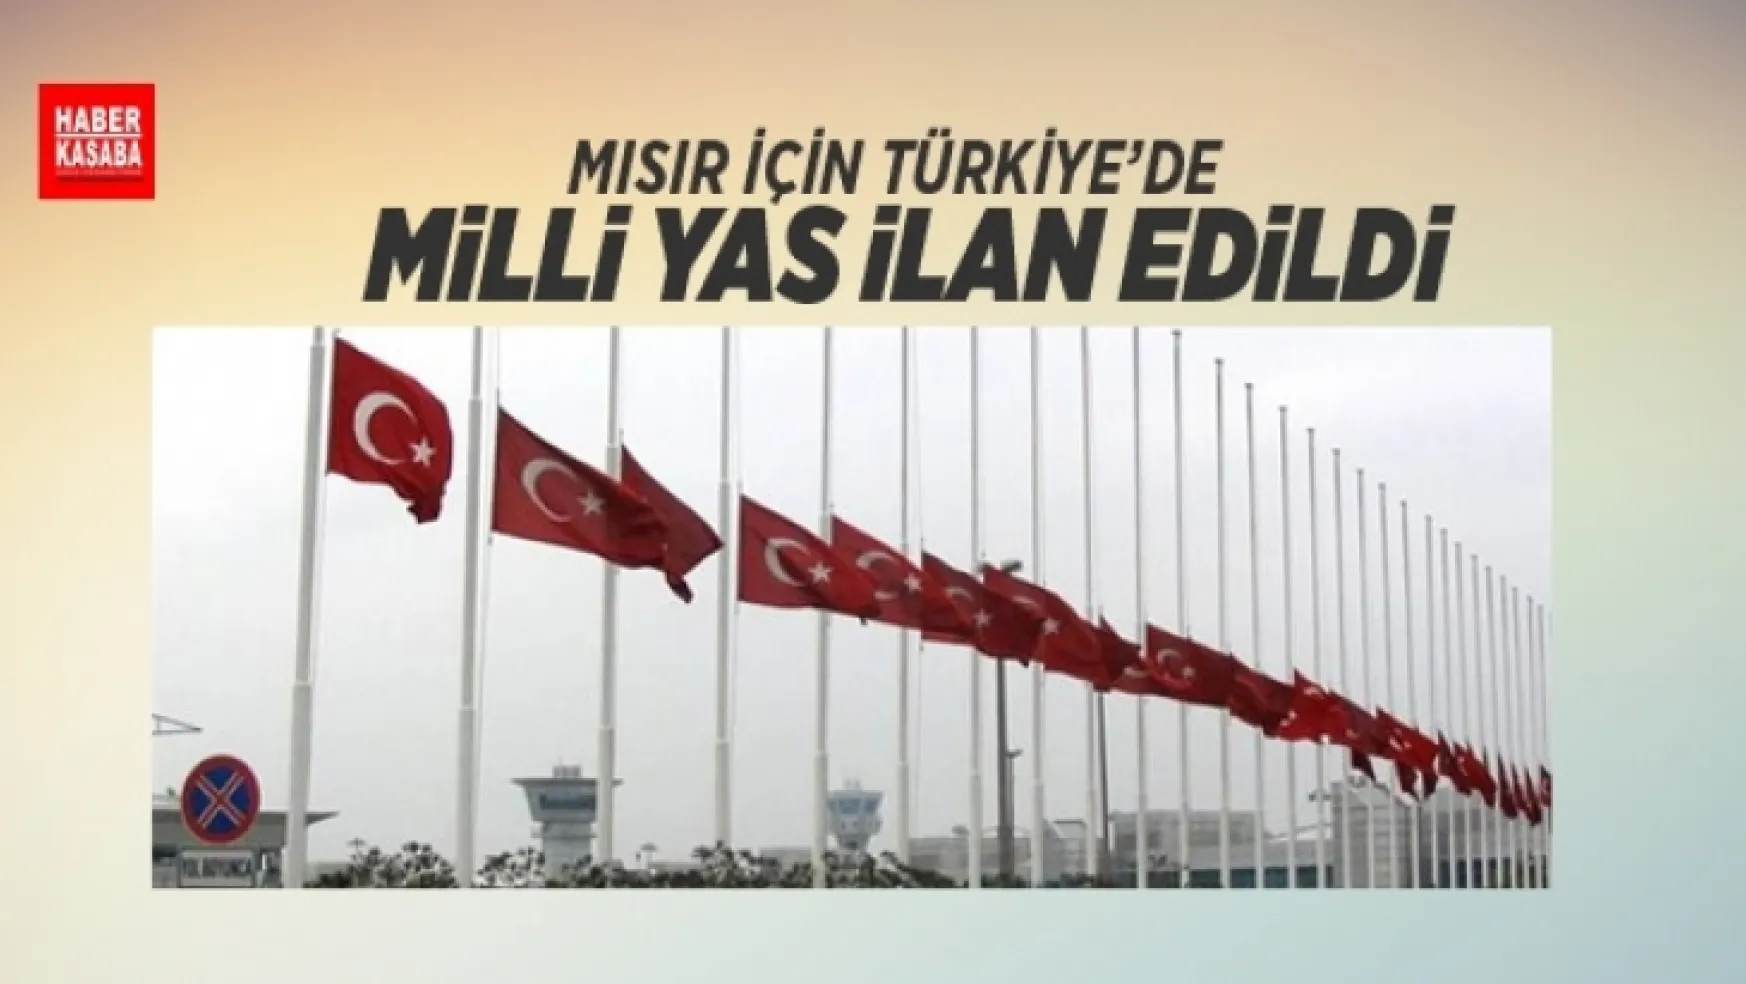 Türkiye'de 'Milli Yas' ilan edildi